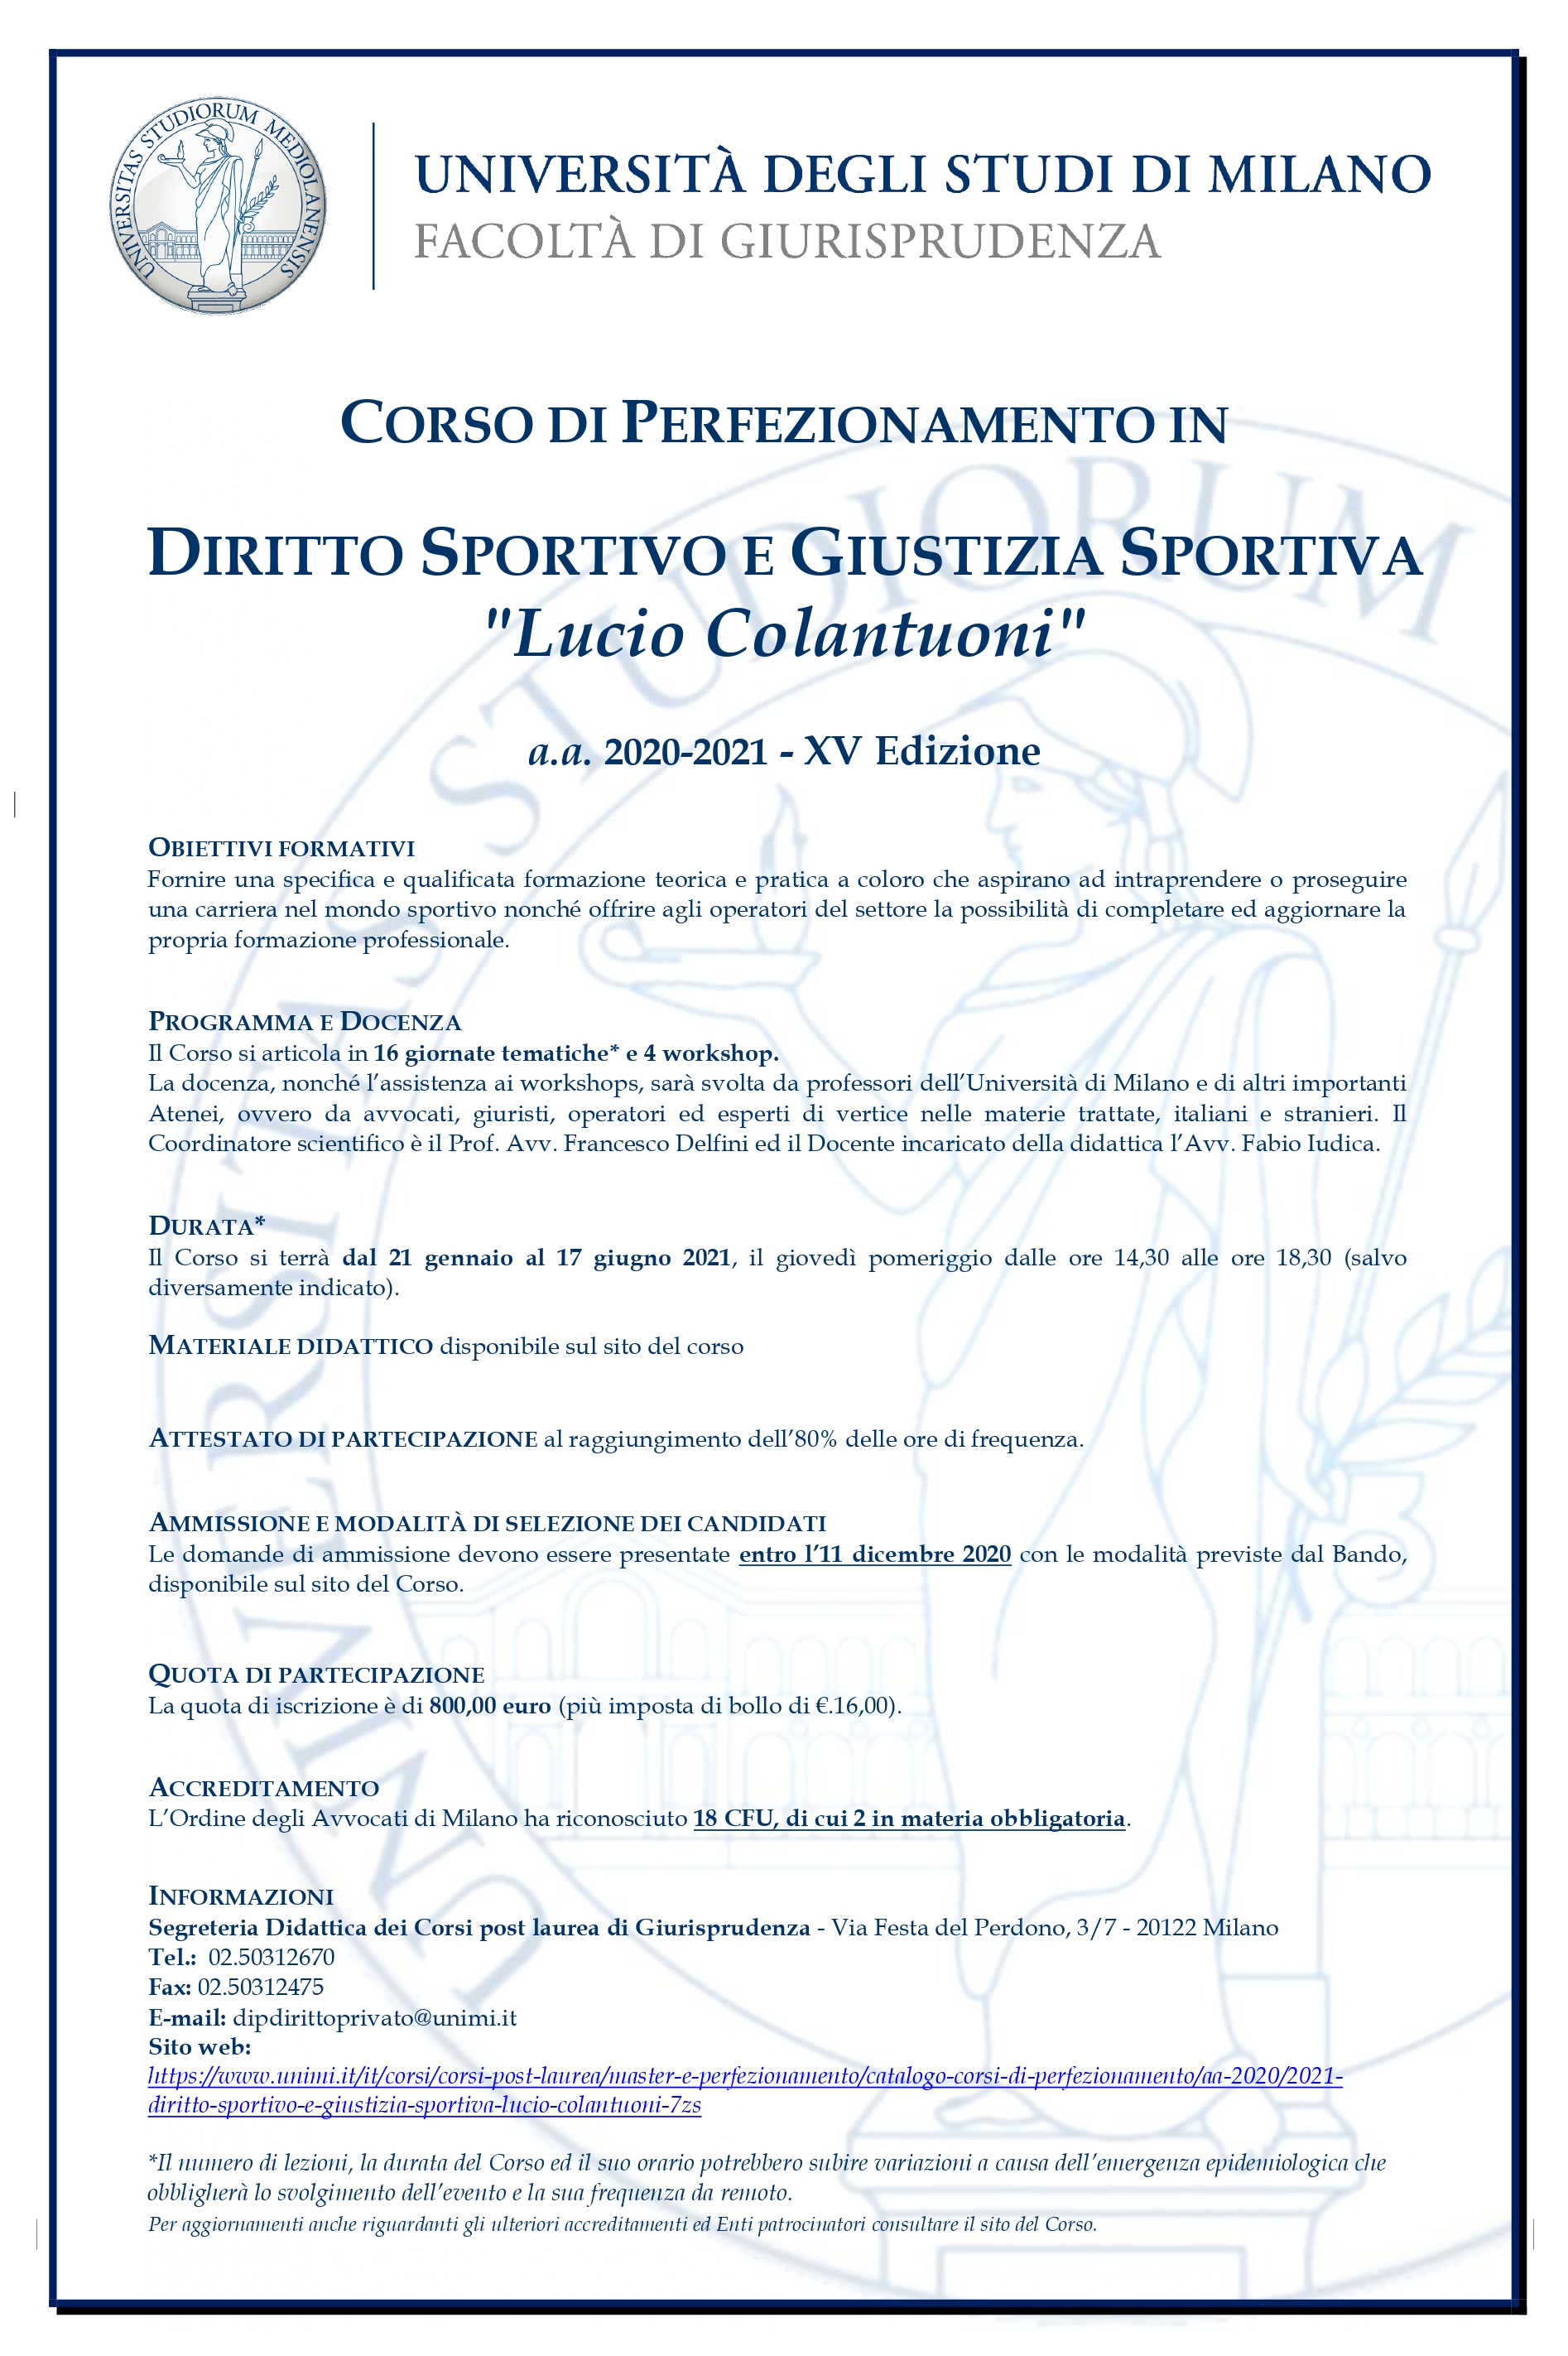 Locandina Corso Diritto Sportivo e Giustizia Sportiva Lucio Colantuoni con loghi Enti patrocinatori a.a. 2020 2021 page 0001